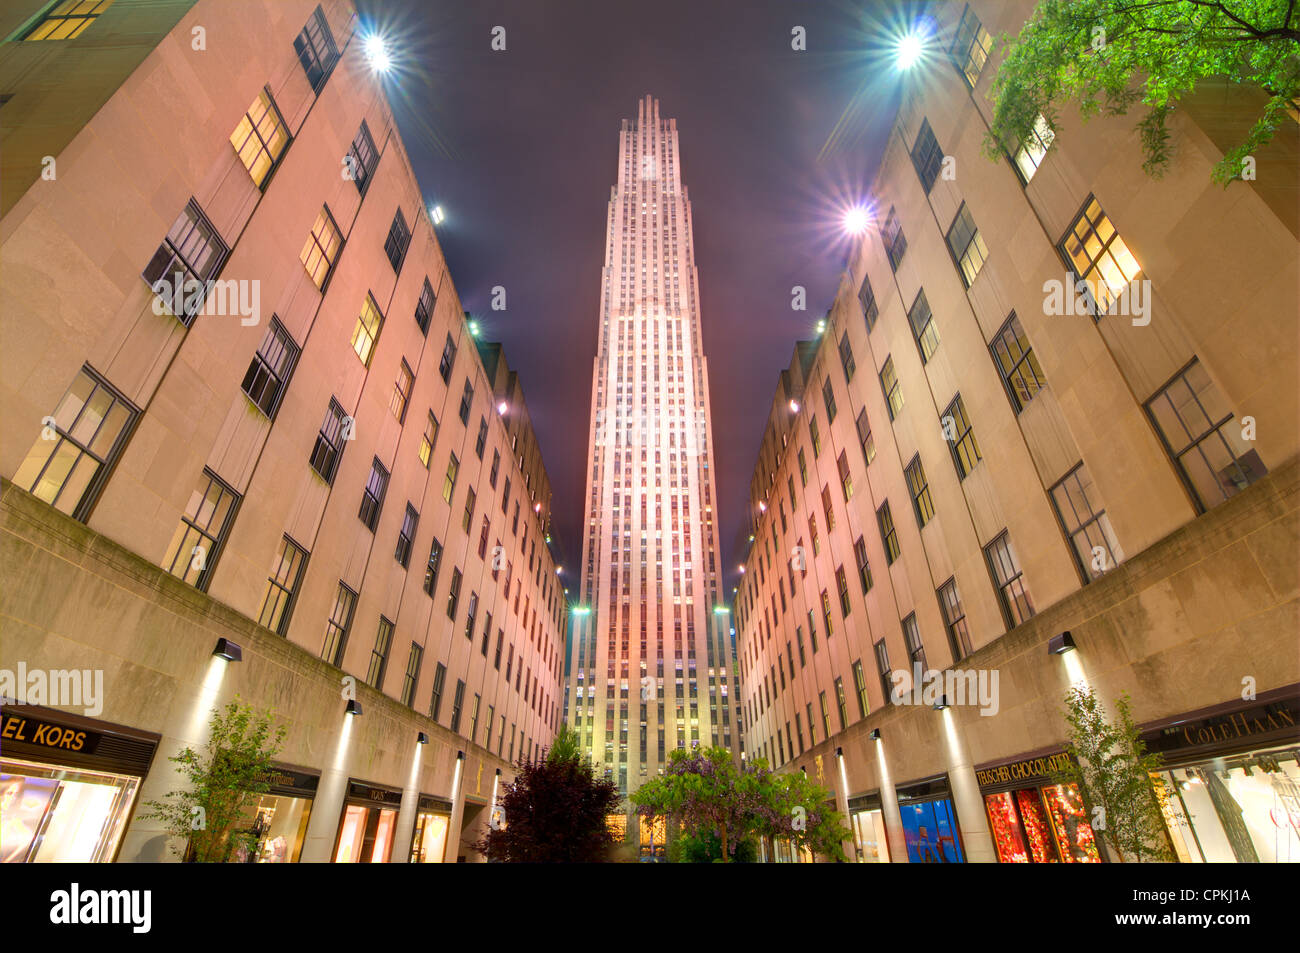 Le GE Building est l'élément central du Rockefeller Center à New York, New York, USA. Banque D'Images